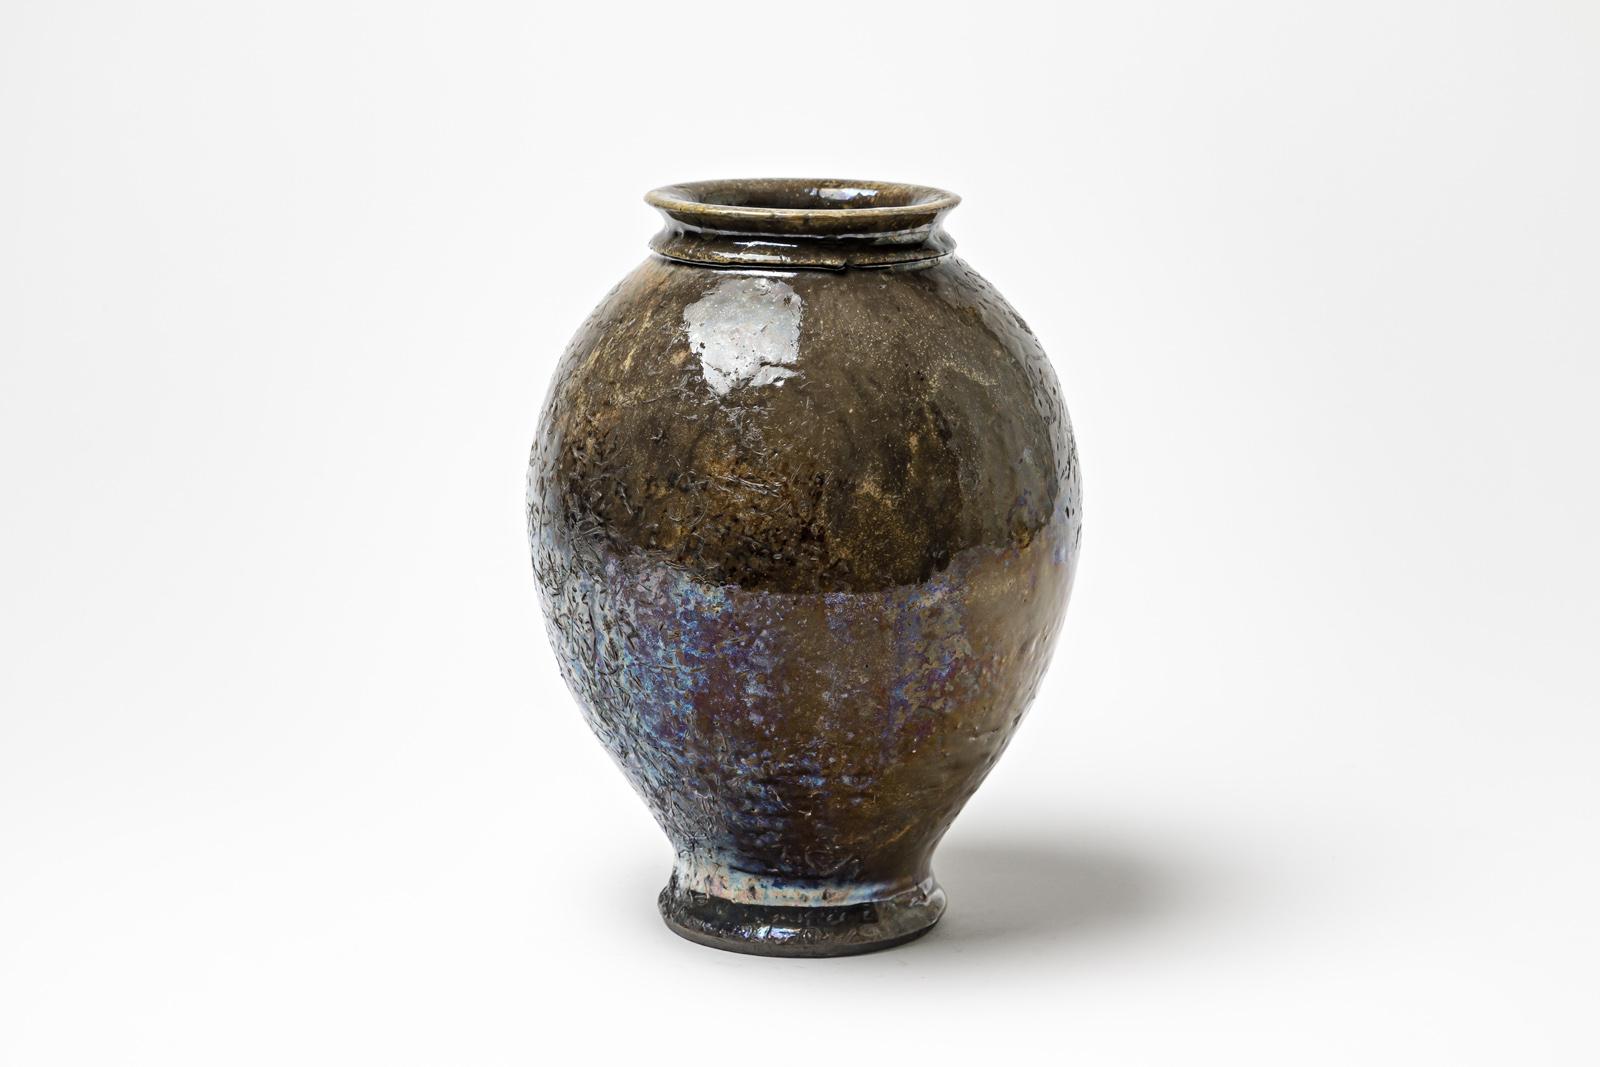 Vase en céramique émaillée brune avec des reflets métalliques par Gisèle Buthod Garçon. Raku a tiré. Monogramme de l'artiste sous la base. Vers 1980-1990.
H : 10.6' x 7.1' pouces.
